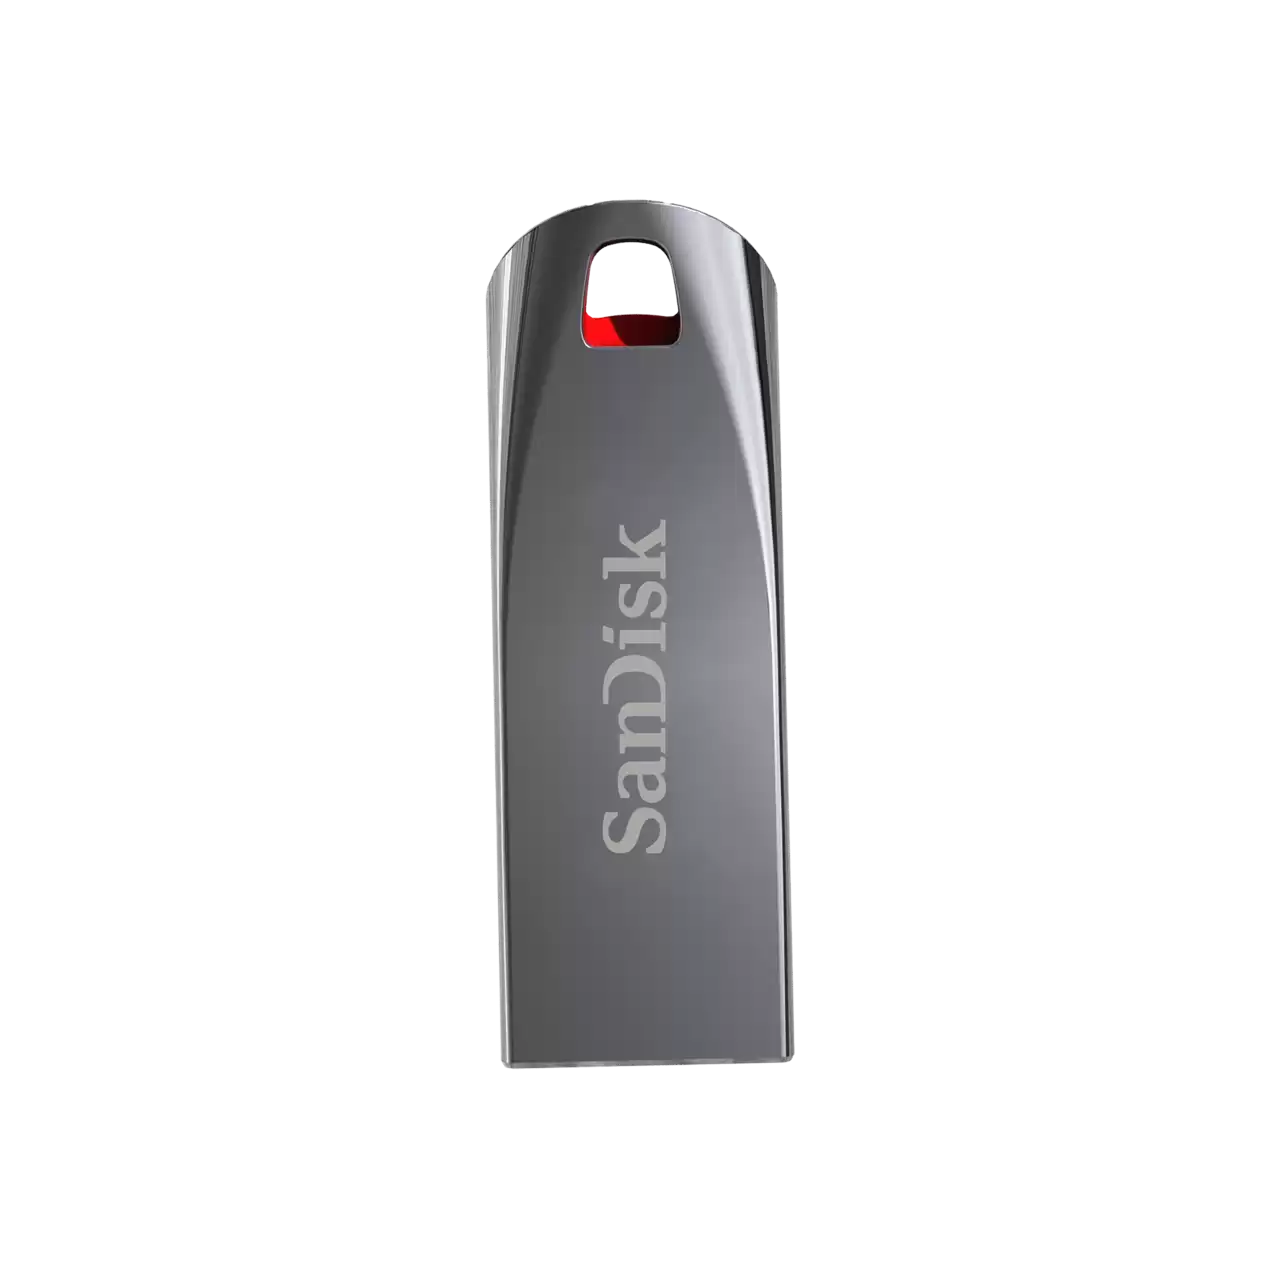 CH640SDK08 – SANDISK CRUZER FORCE – UNIDAD FLASH USB – 64 GB.03